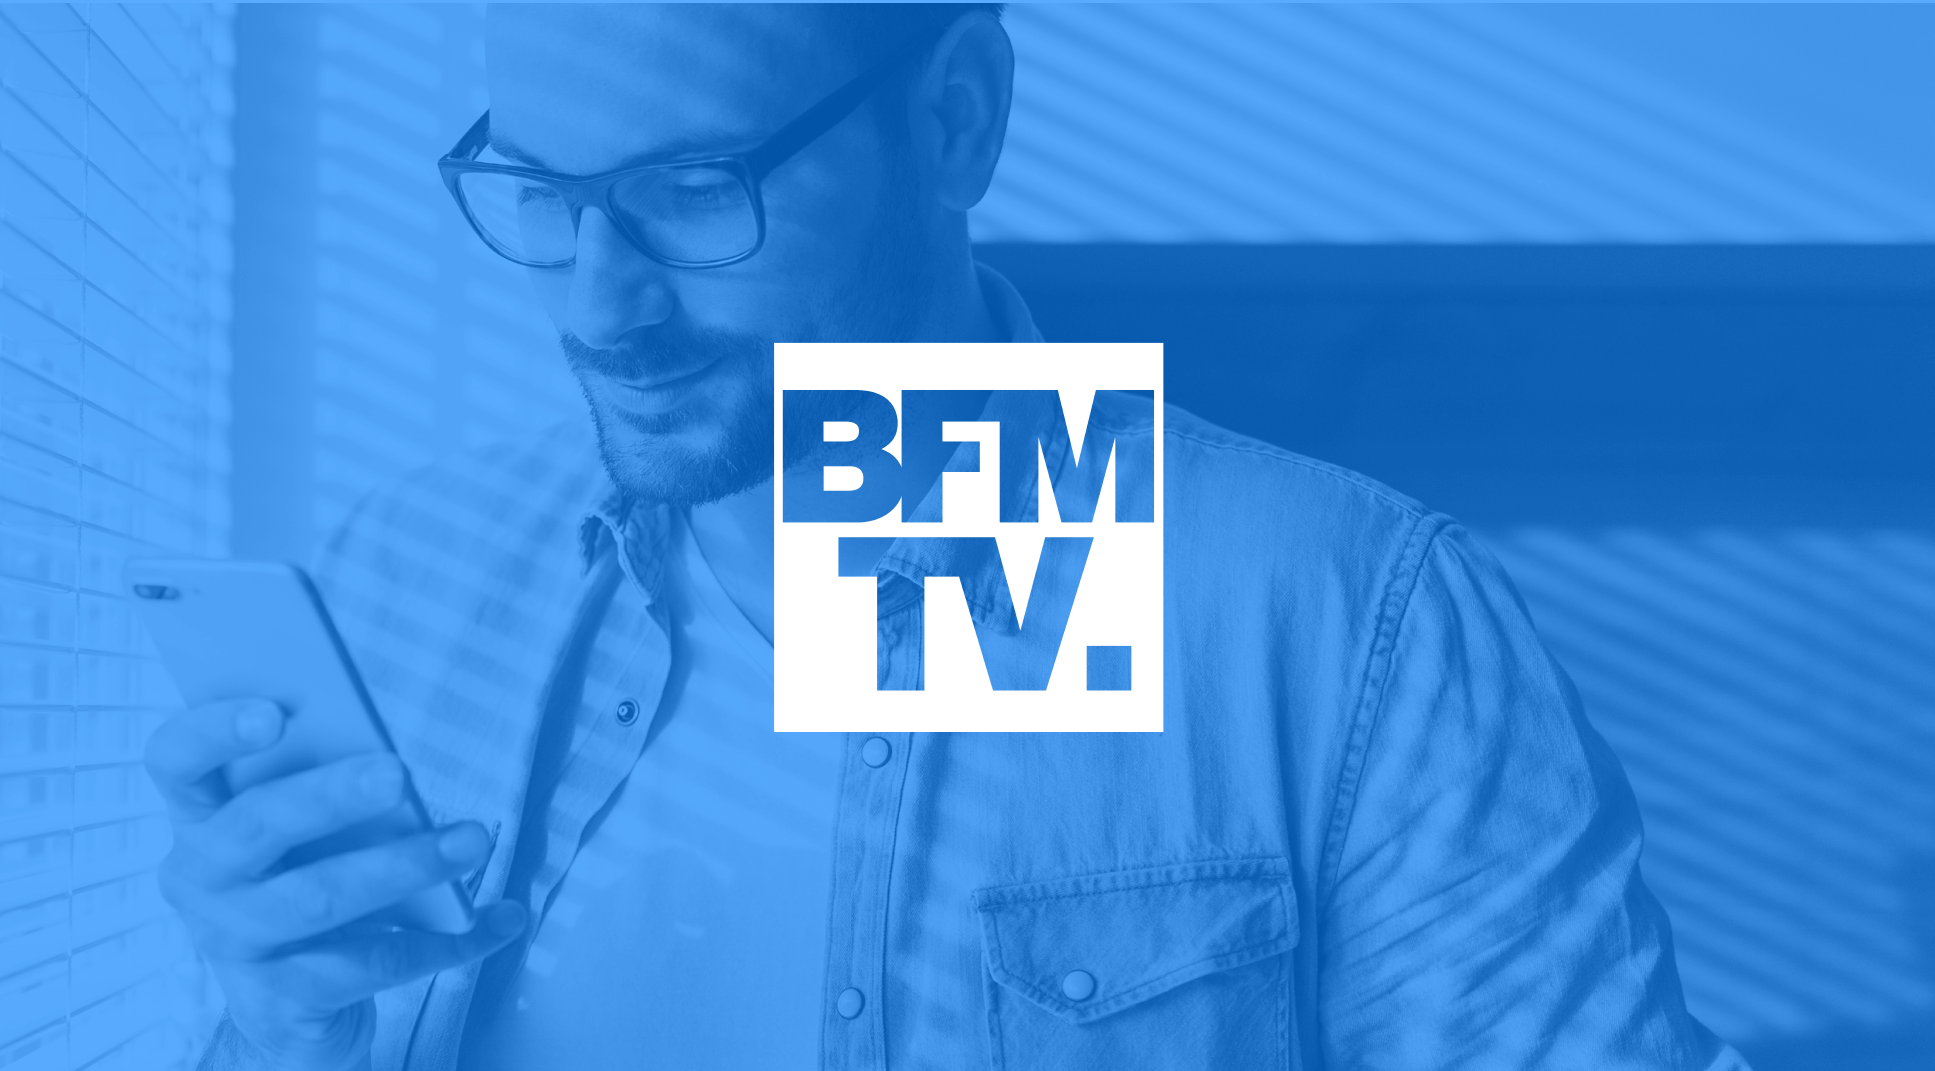 Customer - BFMTV (1)